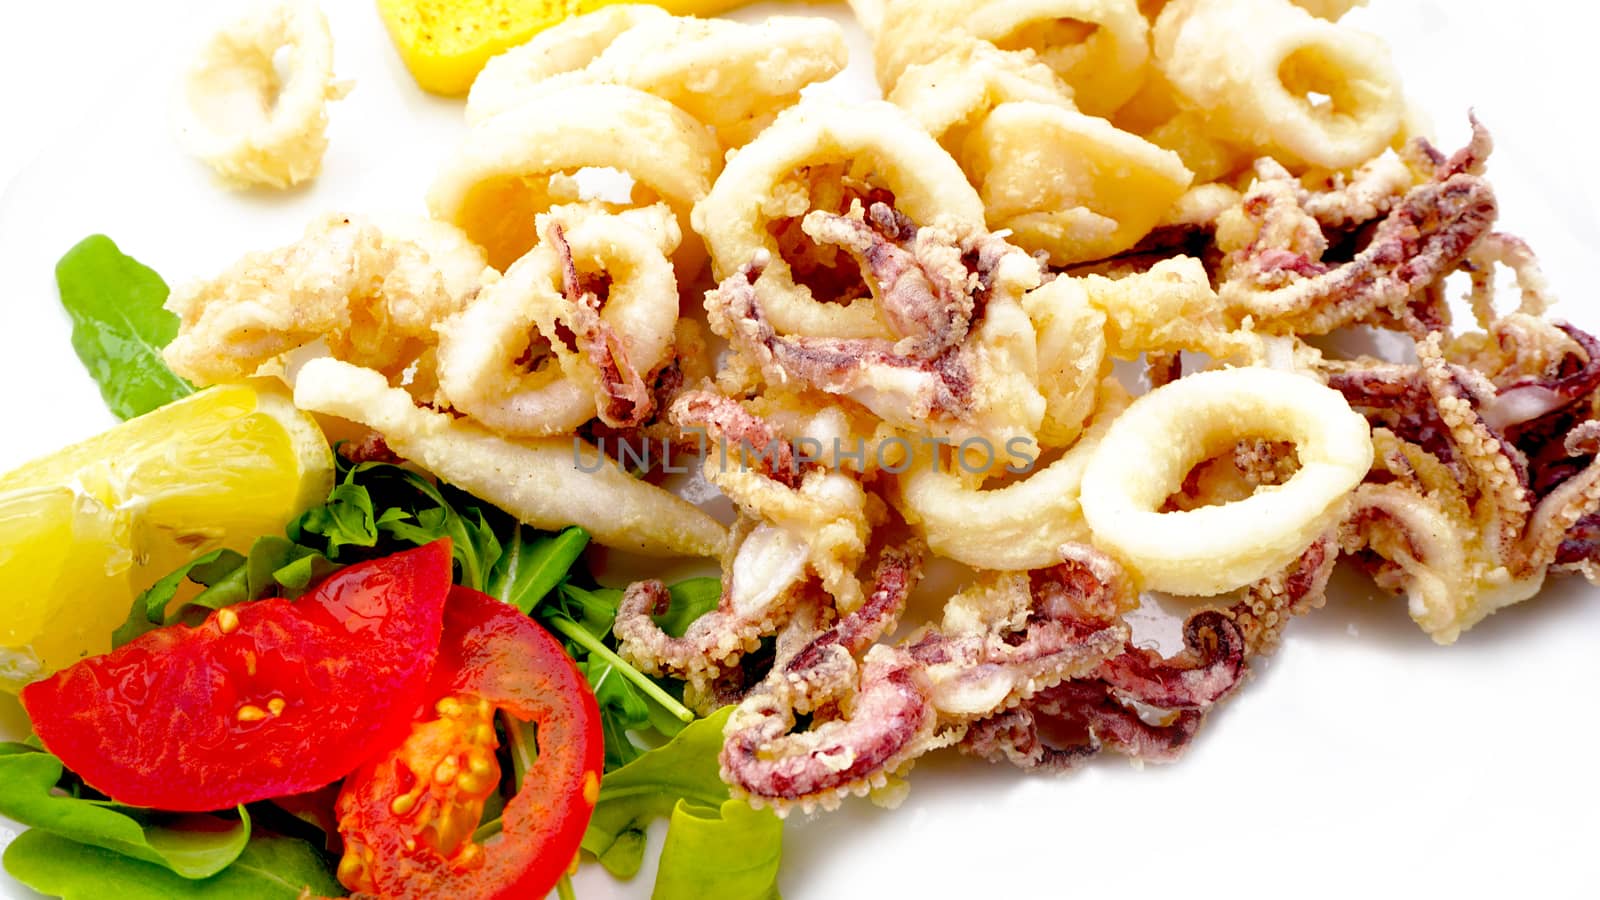 Fried calamari Italian Food Restaurant in Venice, Italy